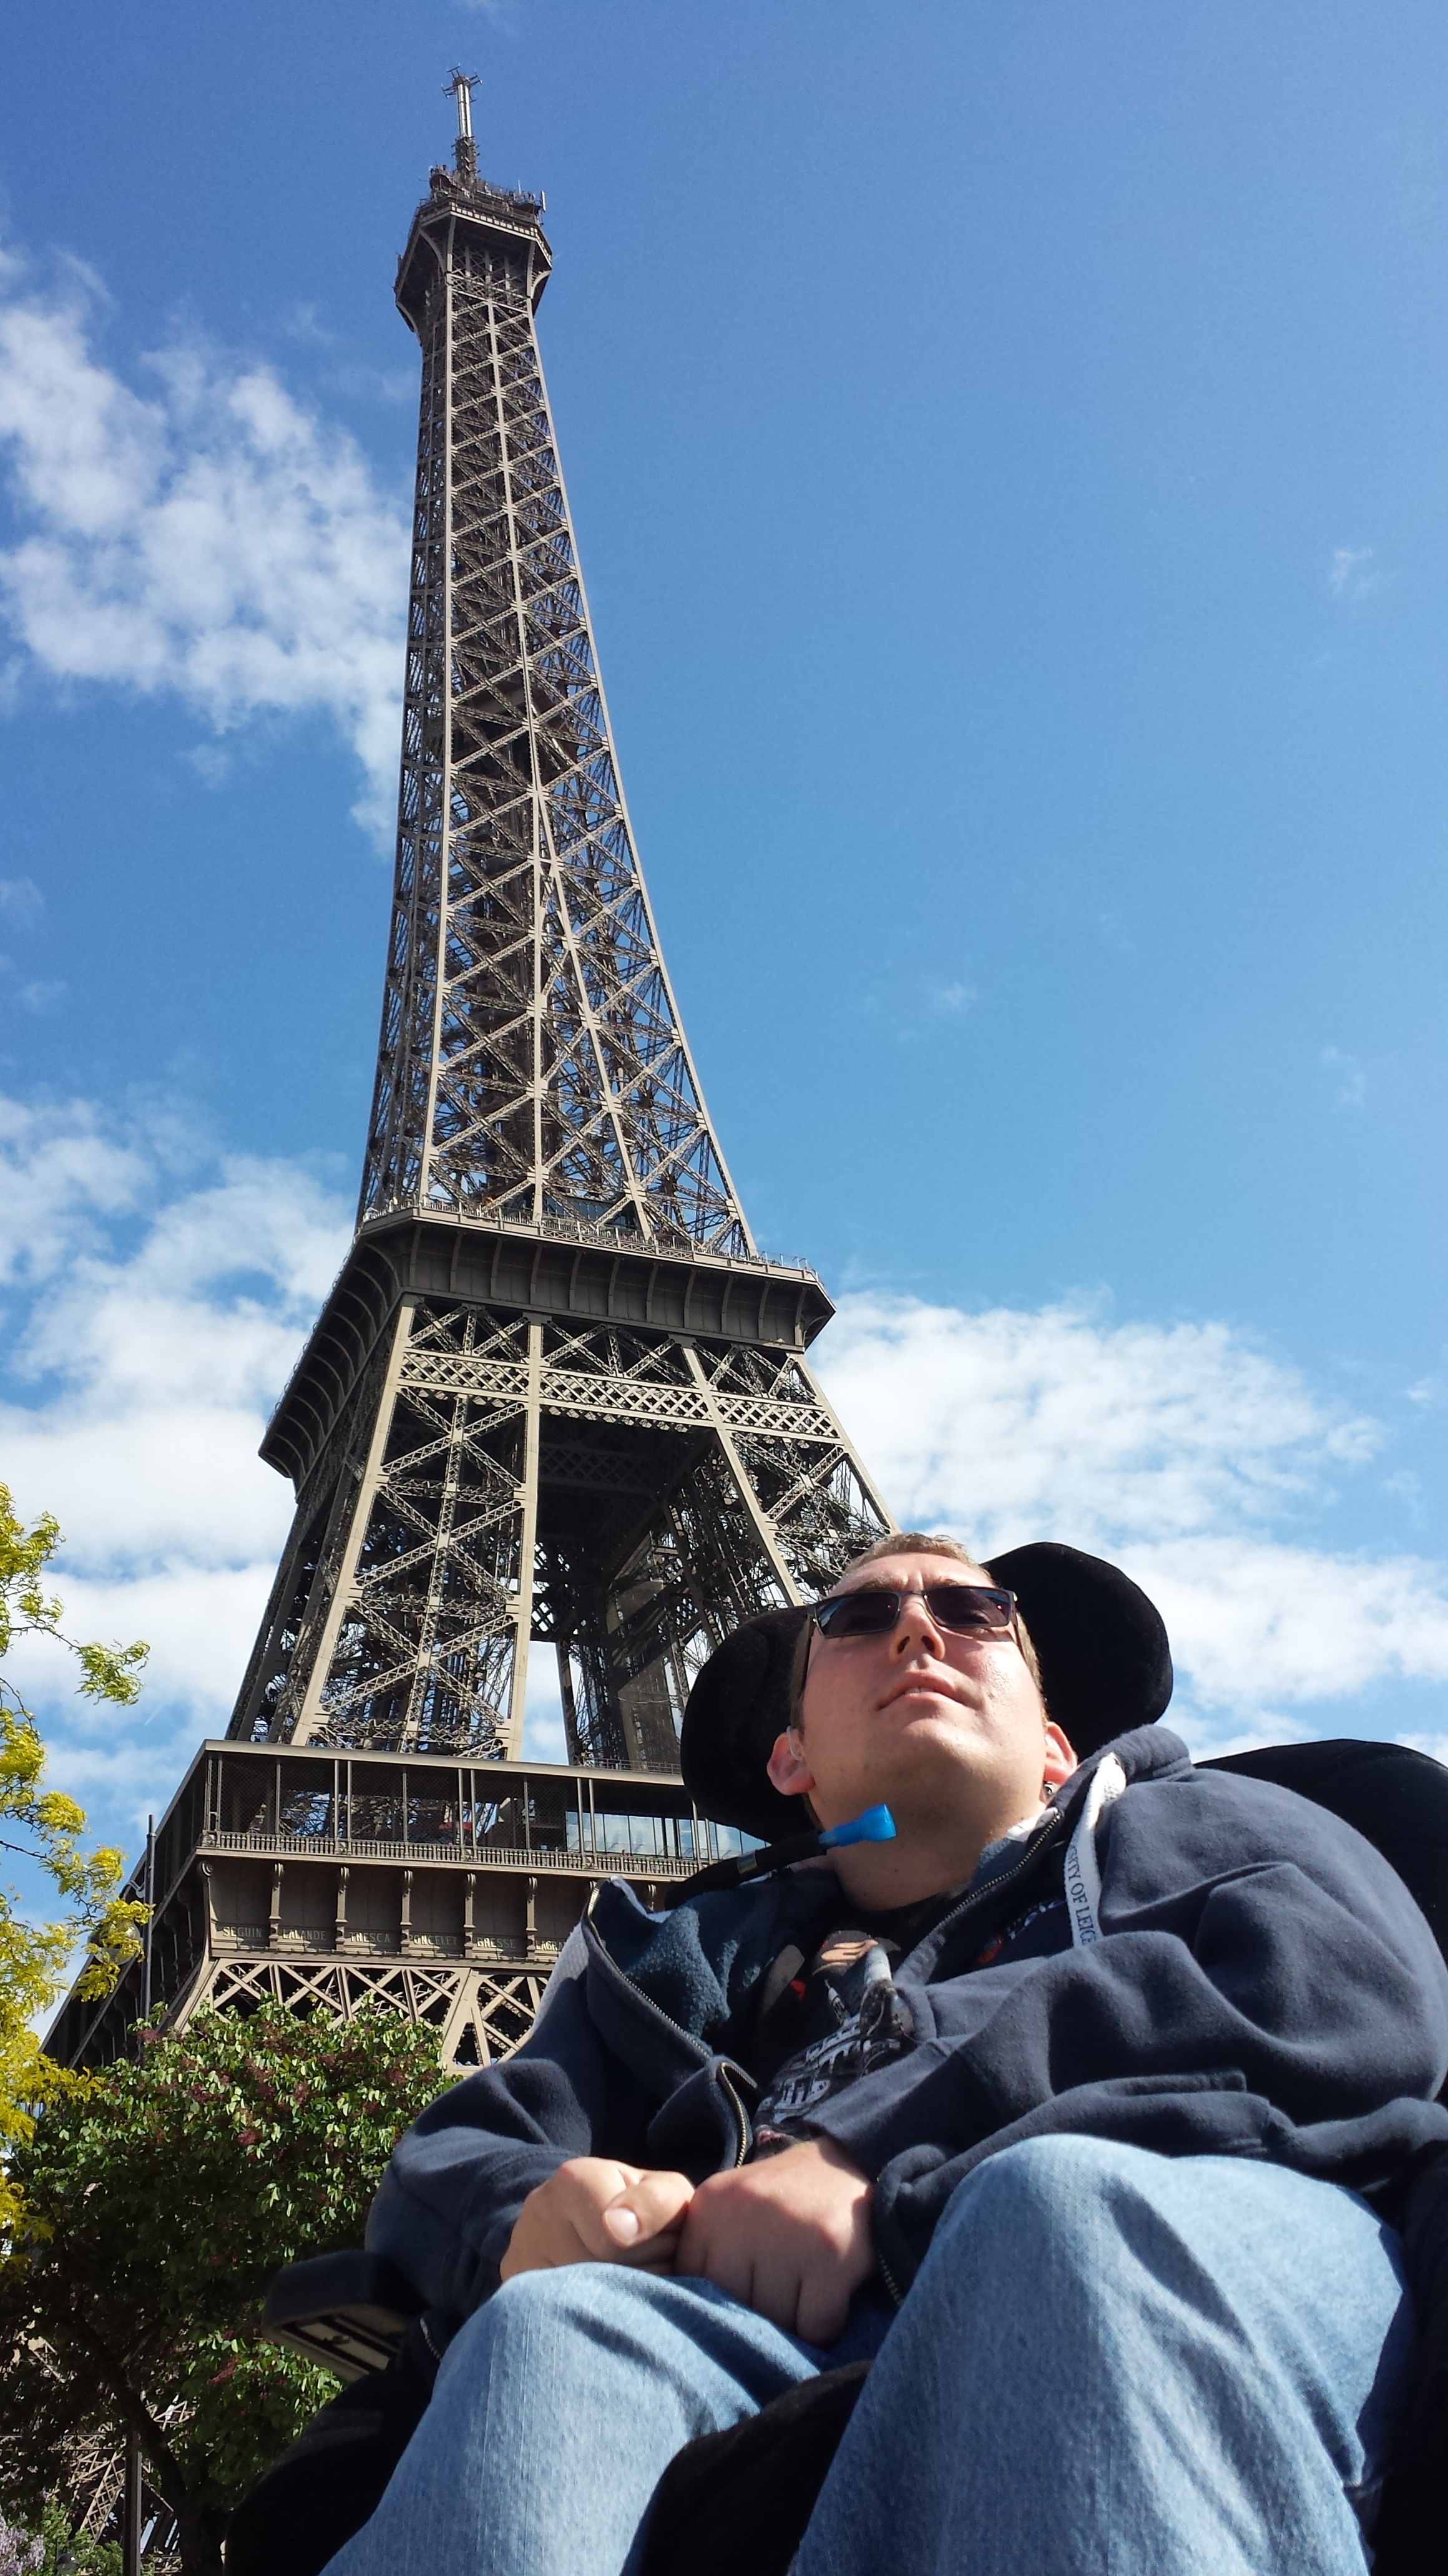 Paris: An Accessibility Review